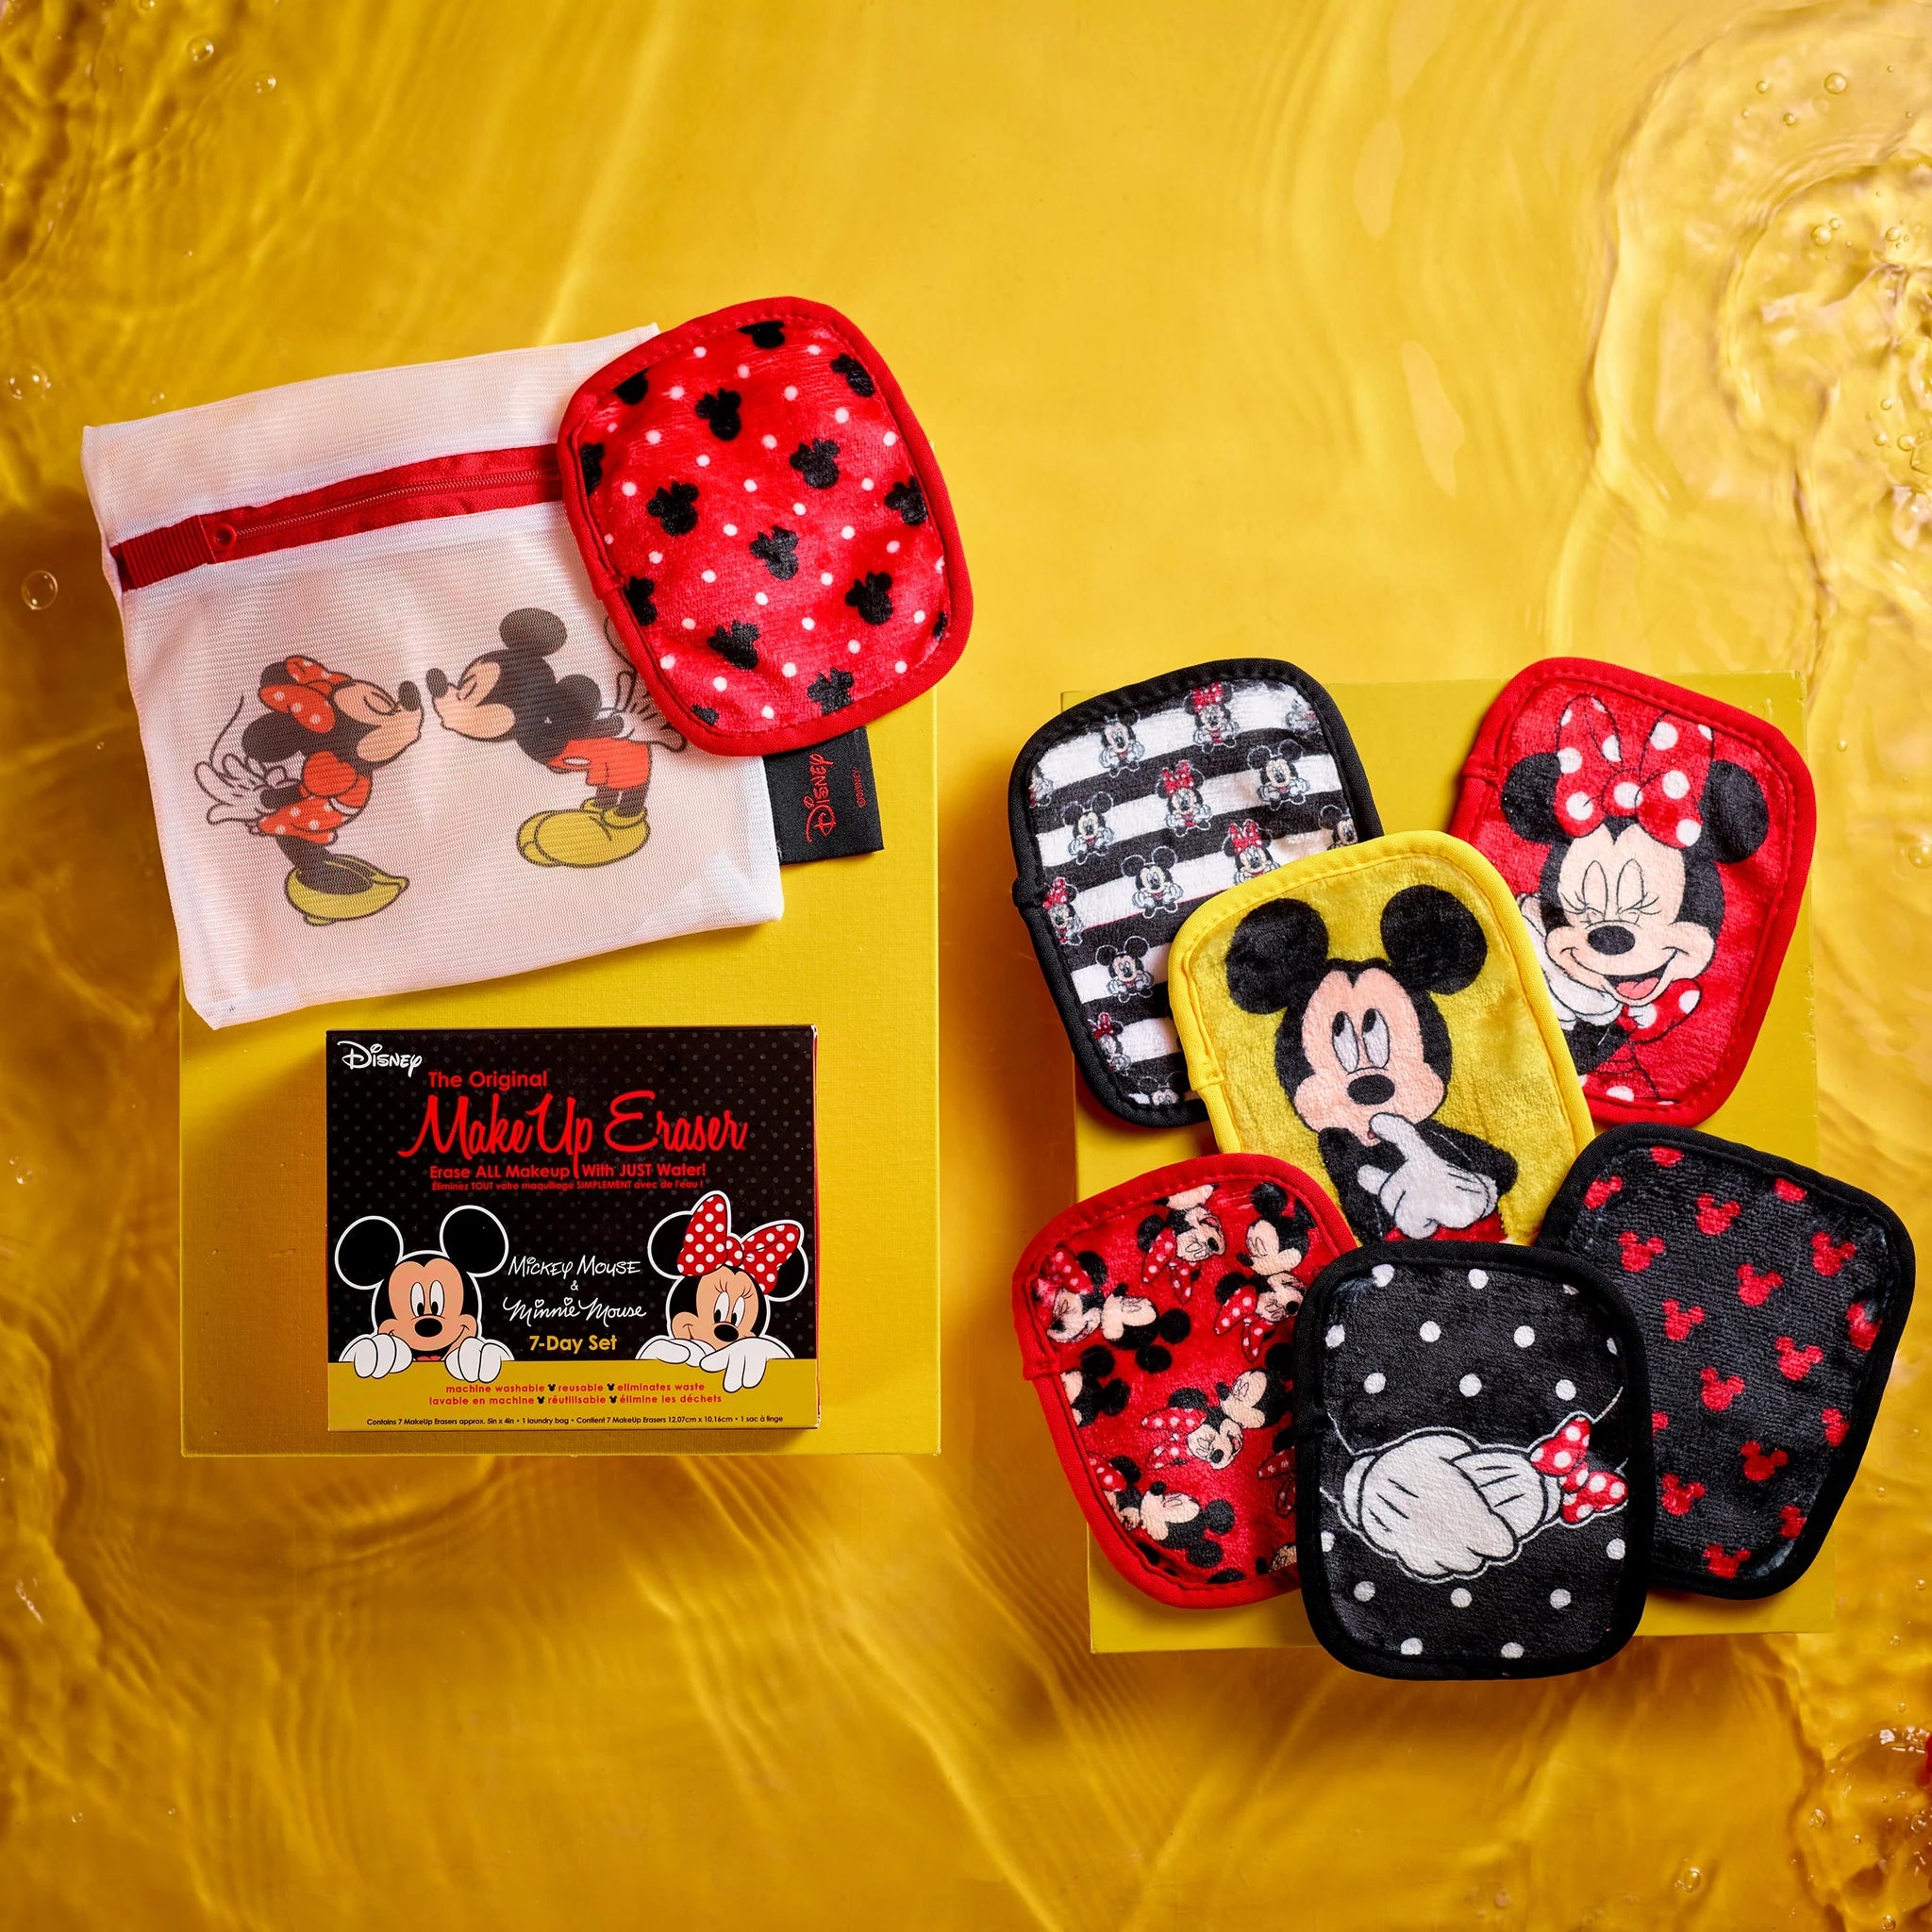 MakeUp Eraser - Mickey & Minnie 7-Day Set